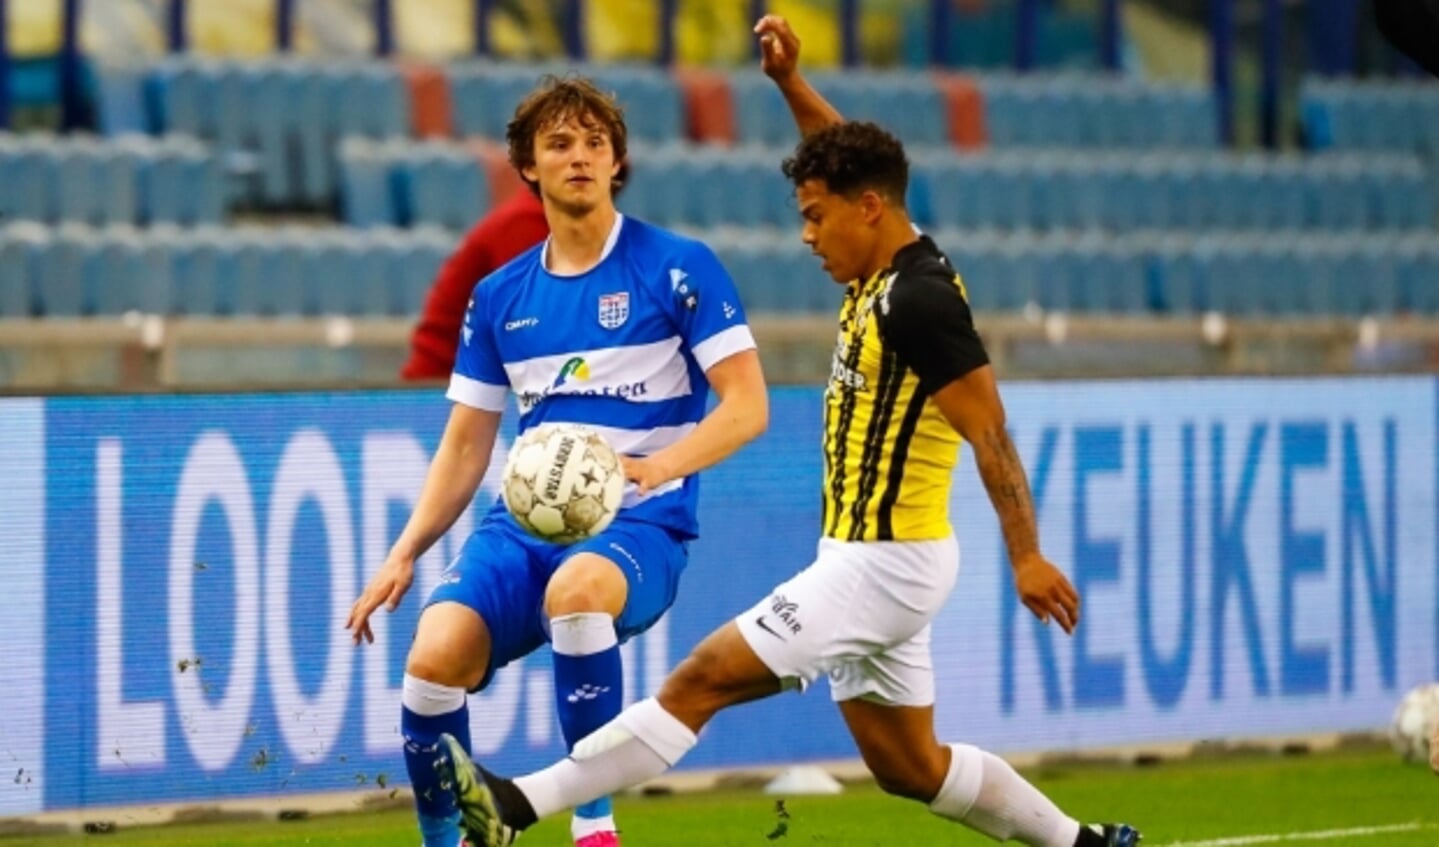 Rav van den Berg maakte zaterdag als rechtsback zijn debuut in het eerste elftal van PEC Zwolle.